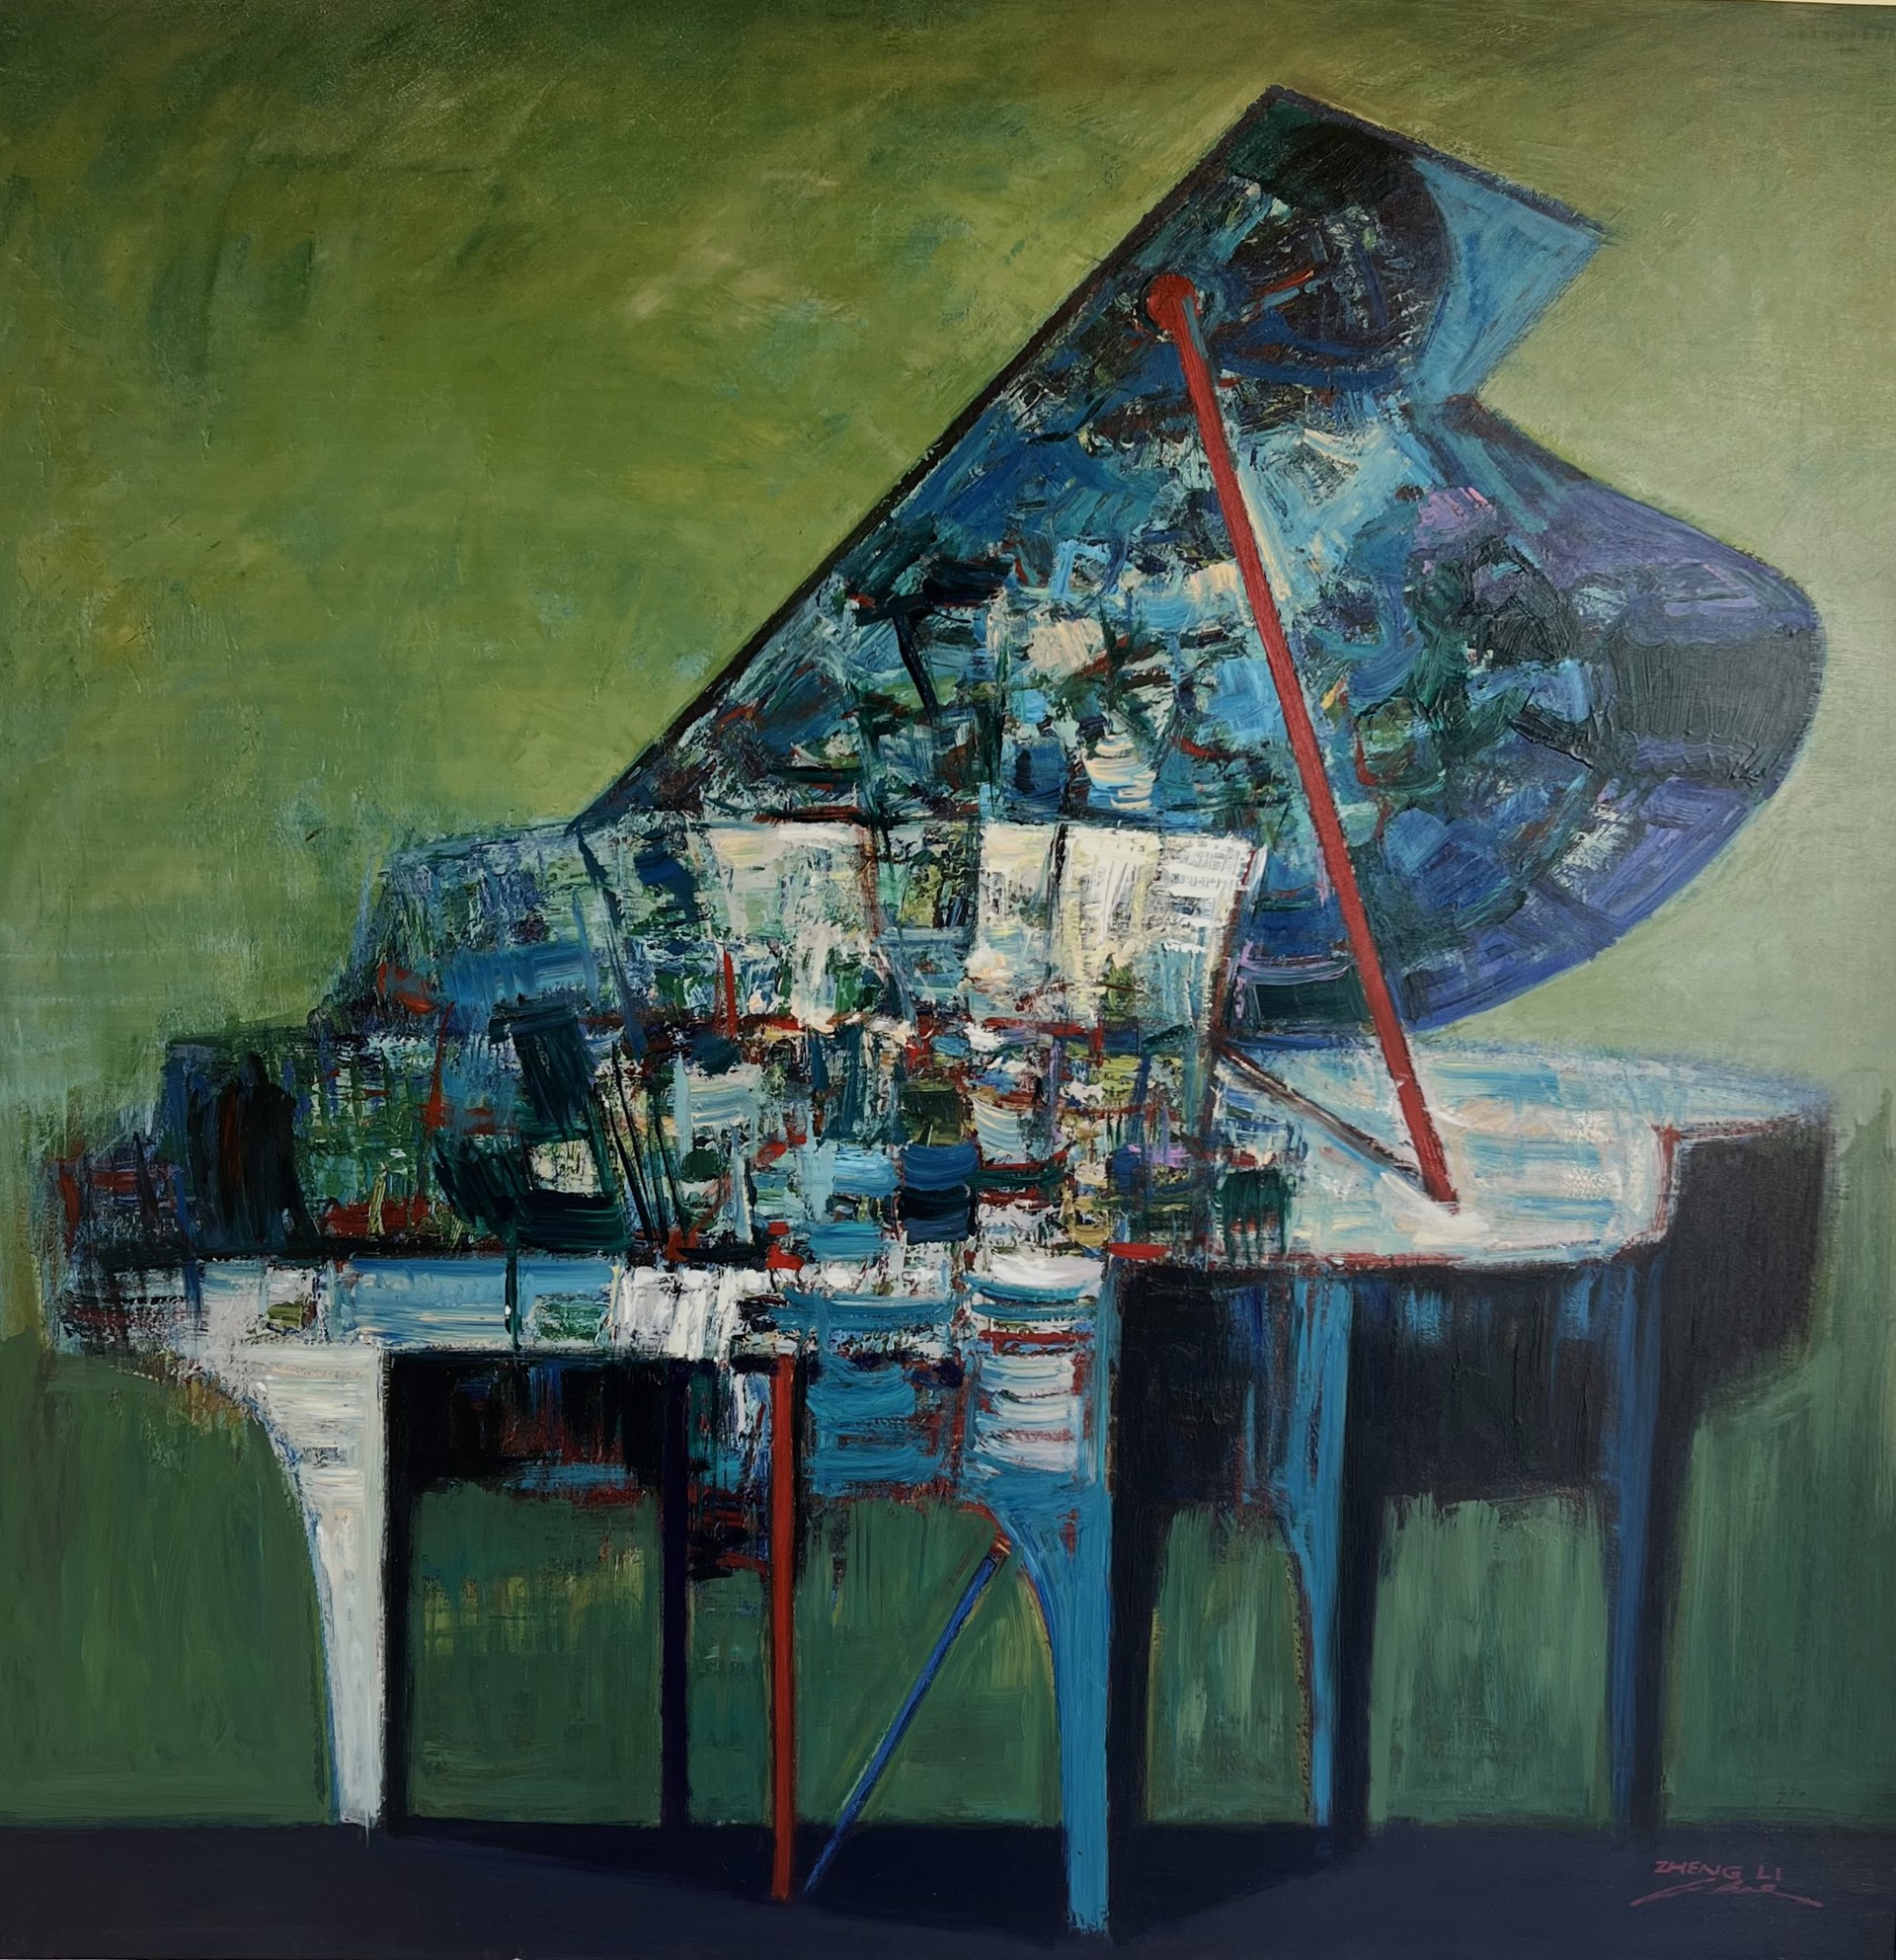 Piano #5 by ZHENG LI